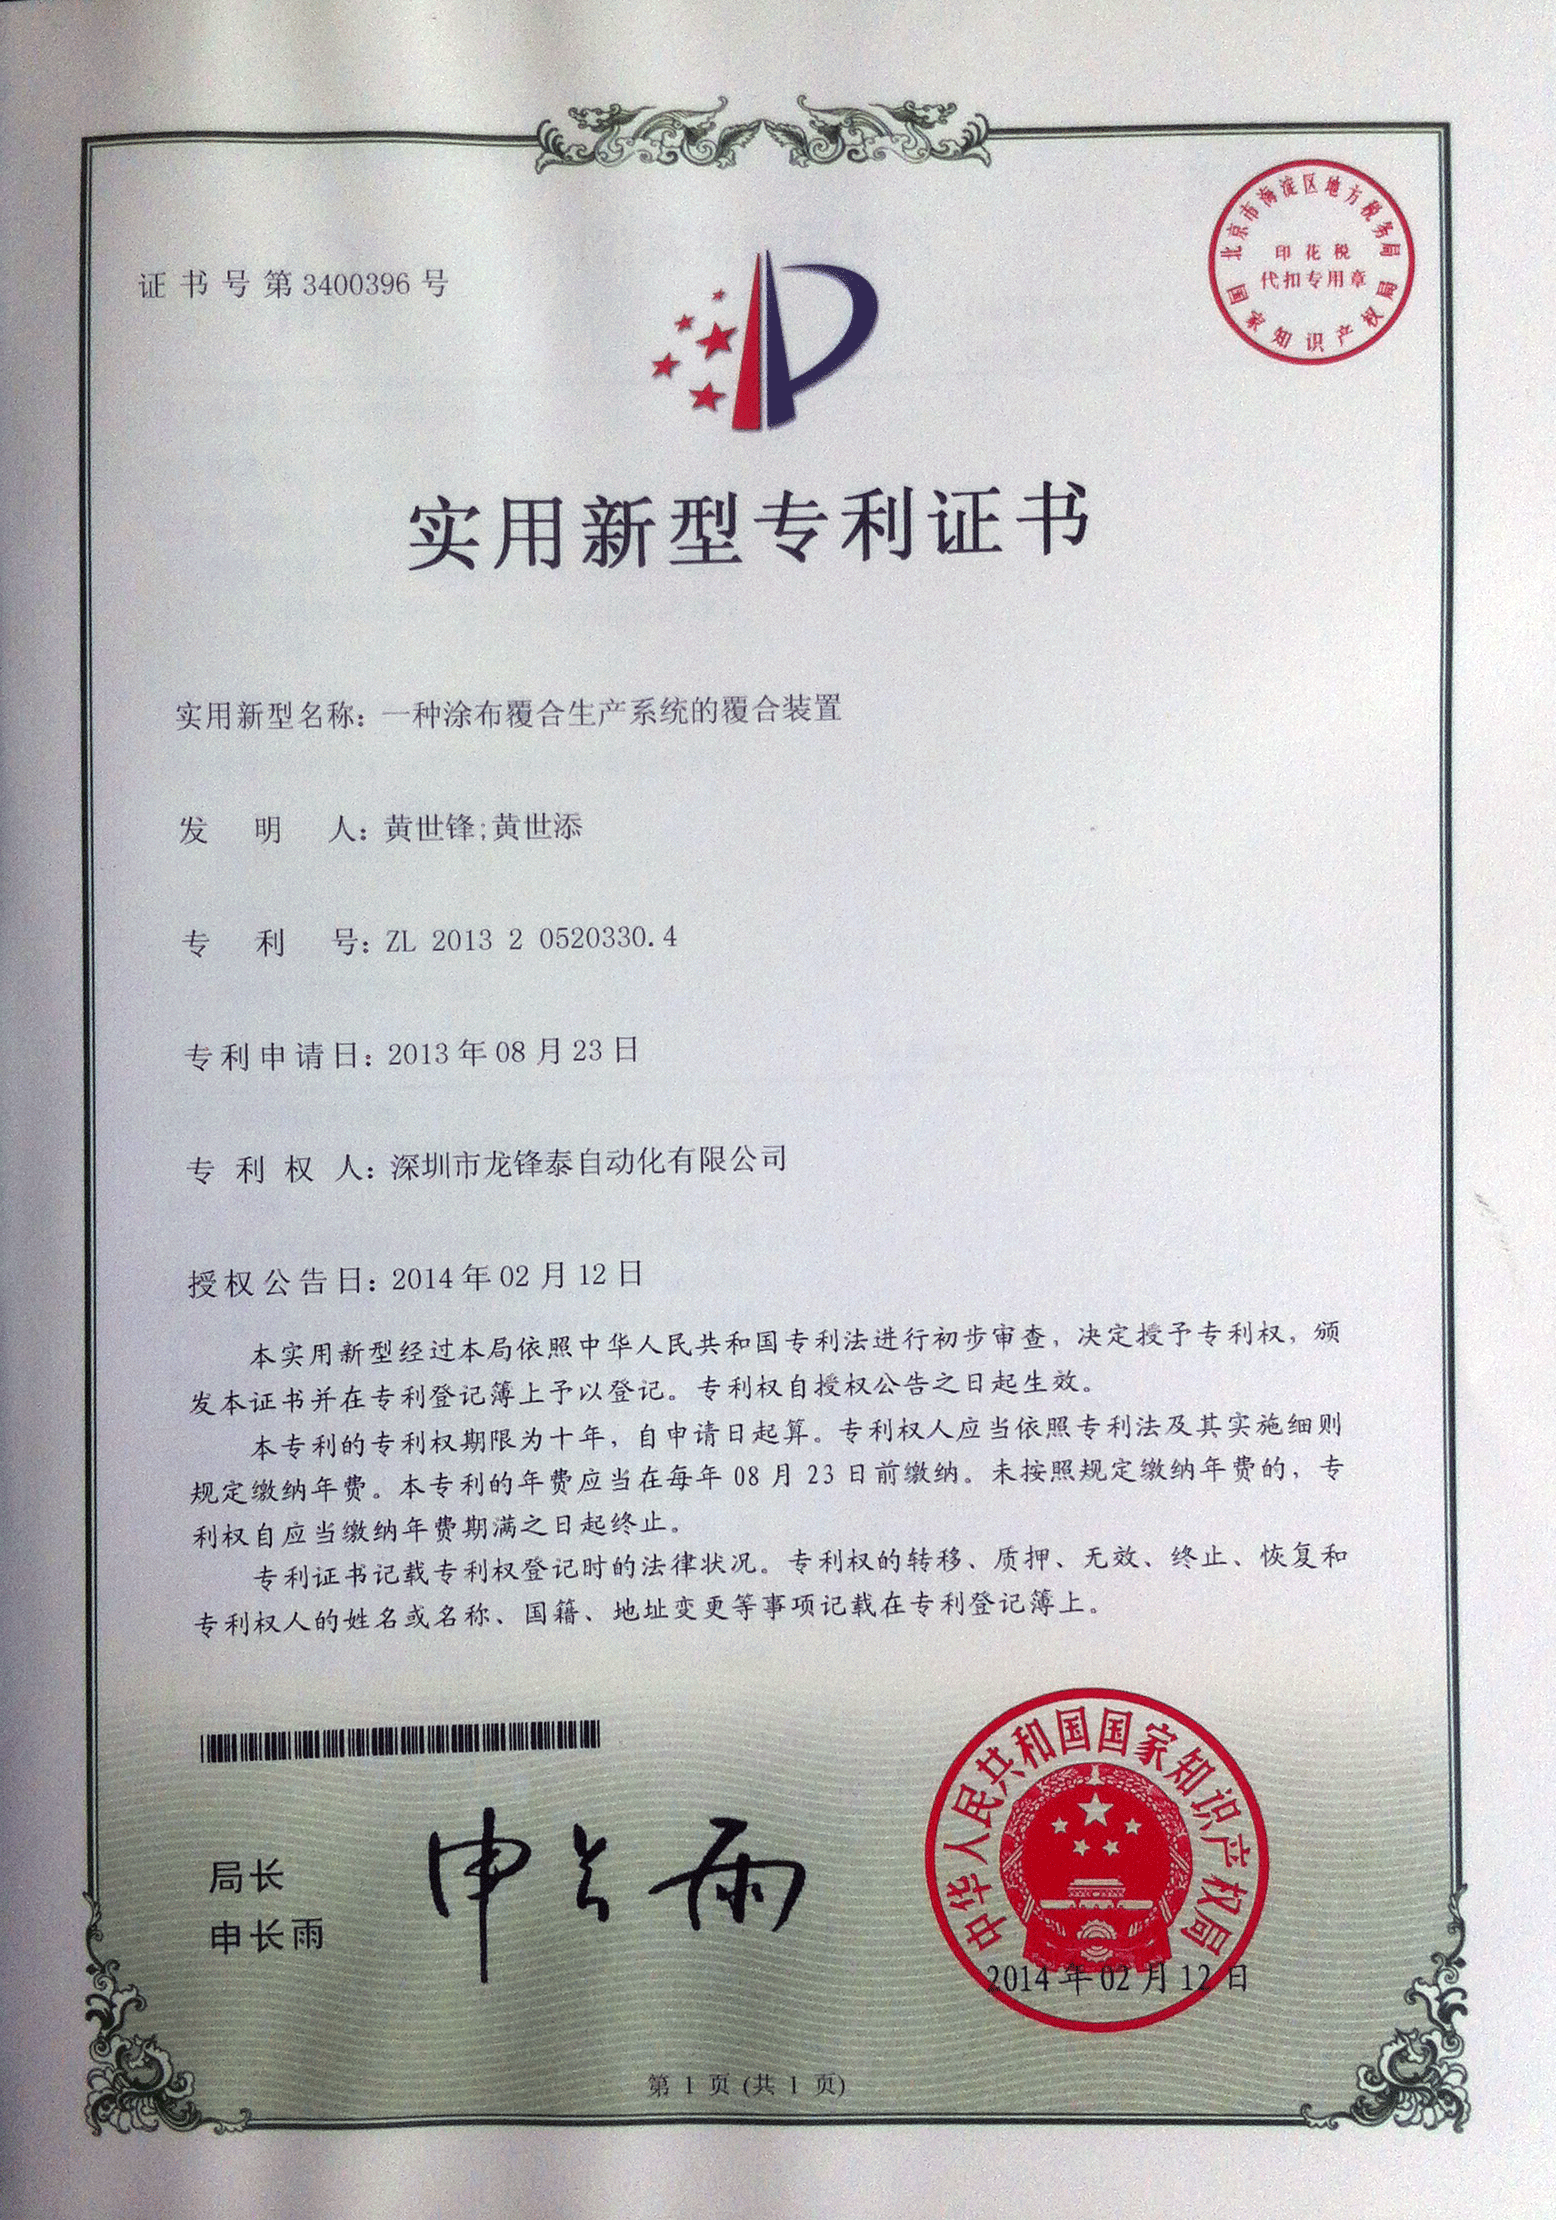 涂布覆合生产系统的覆合装置zhuanli证书